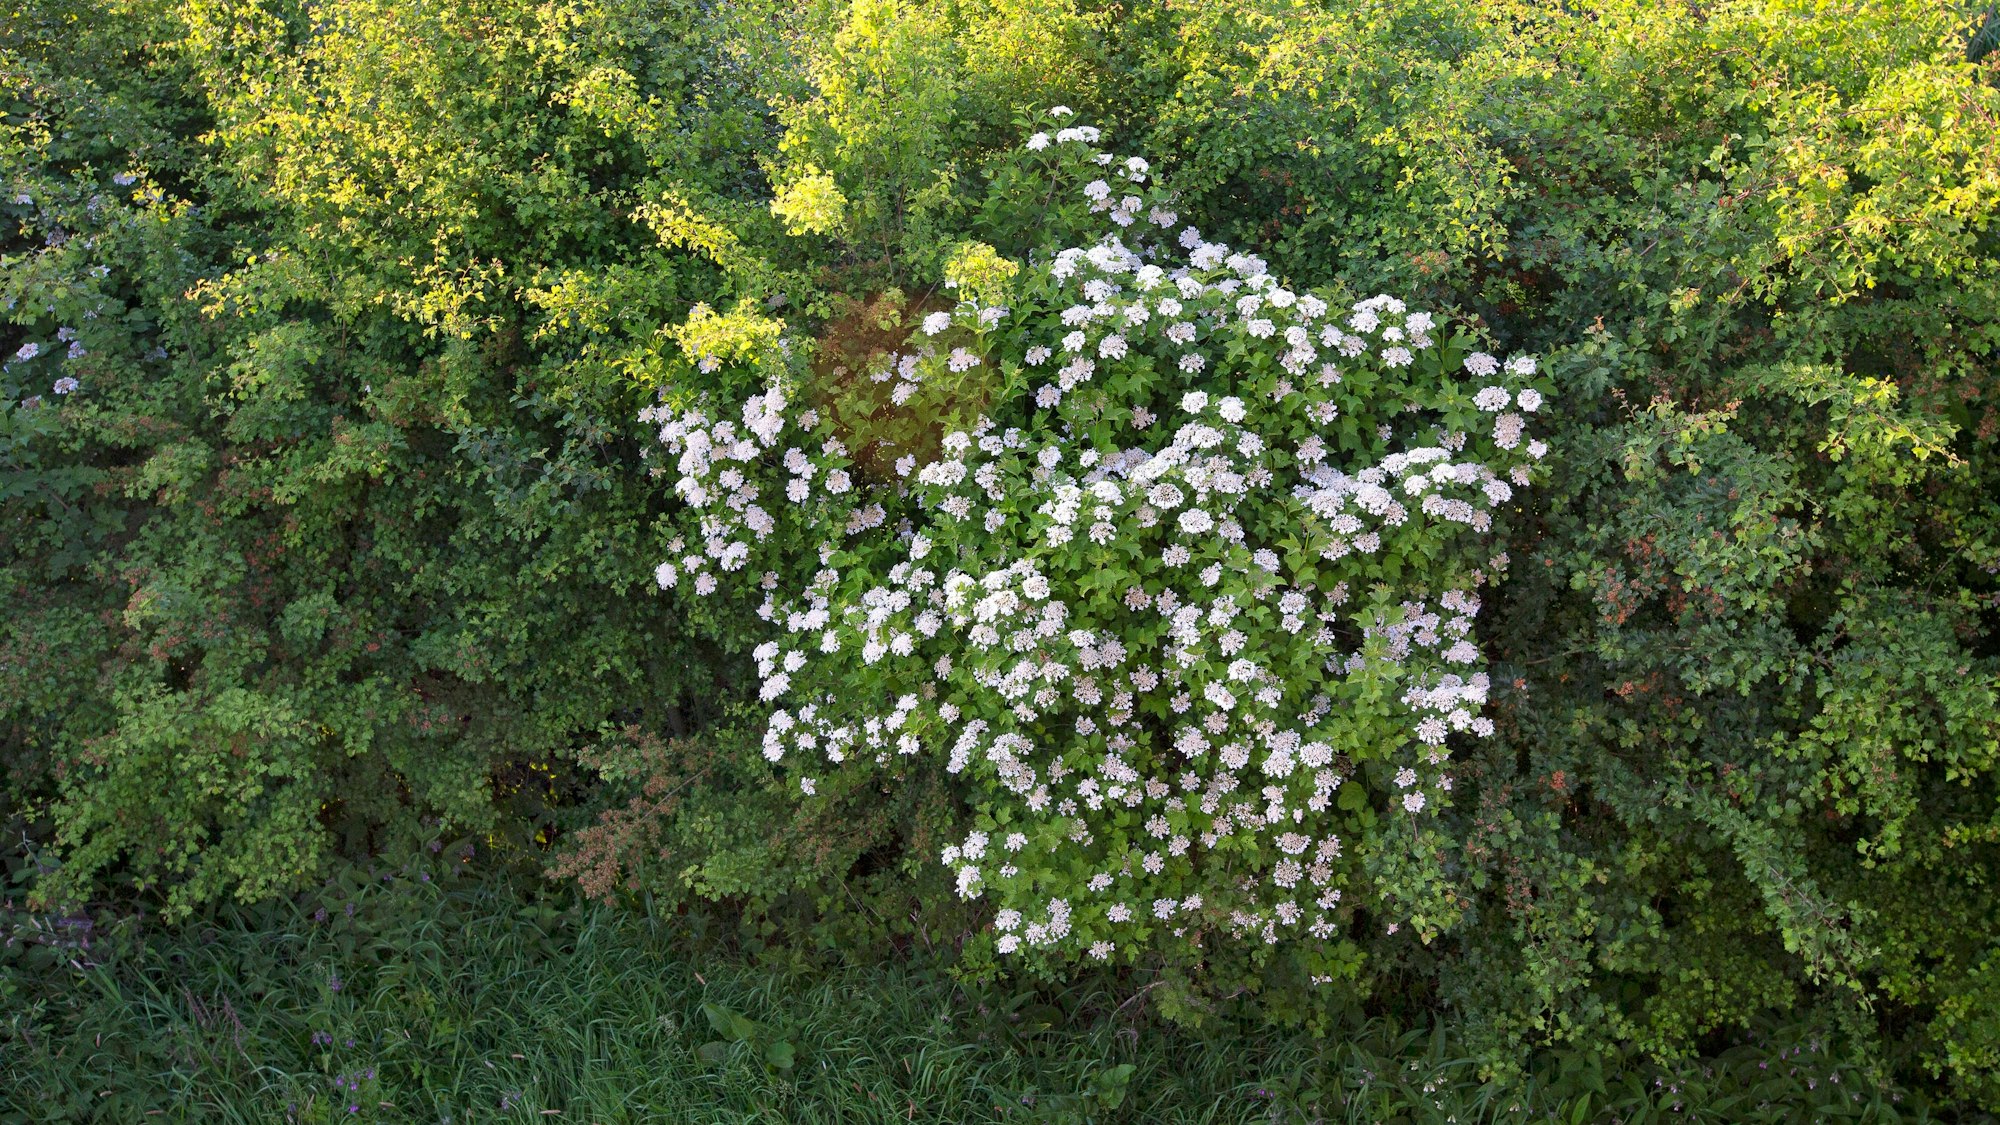 Der Gewöhnliche Schneeball verziert eine sonst grüne Hecke mit weißen Blüten.